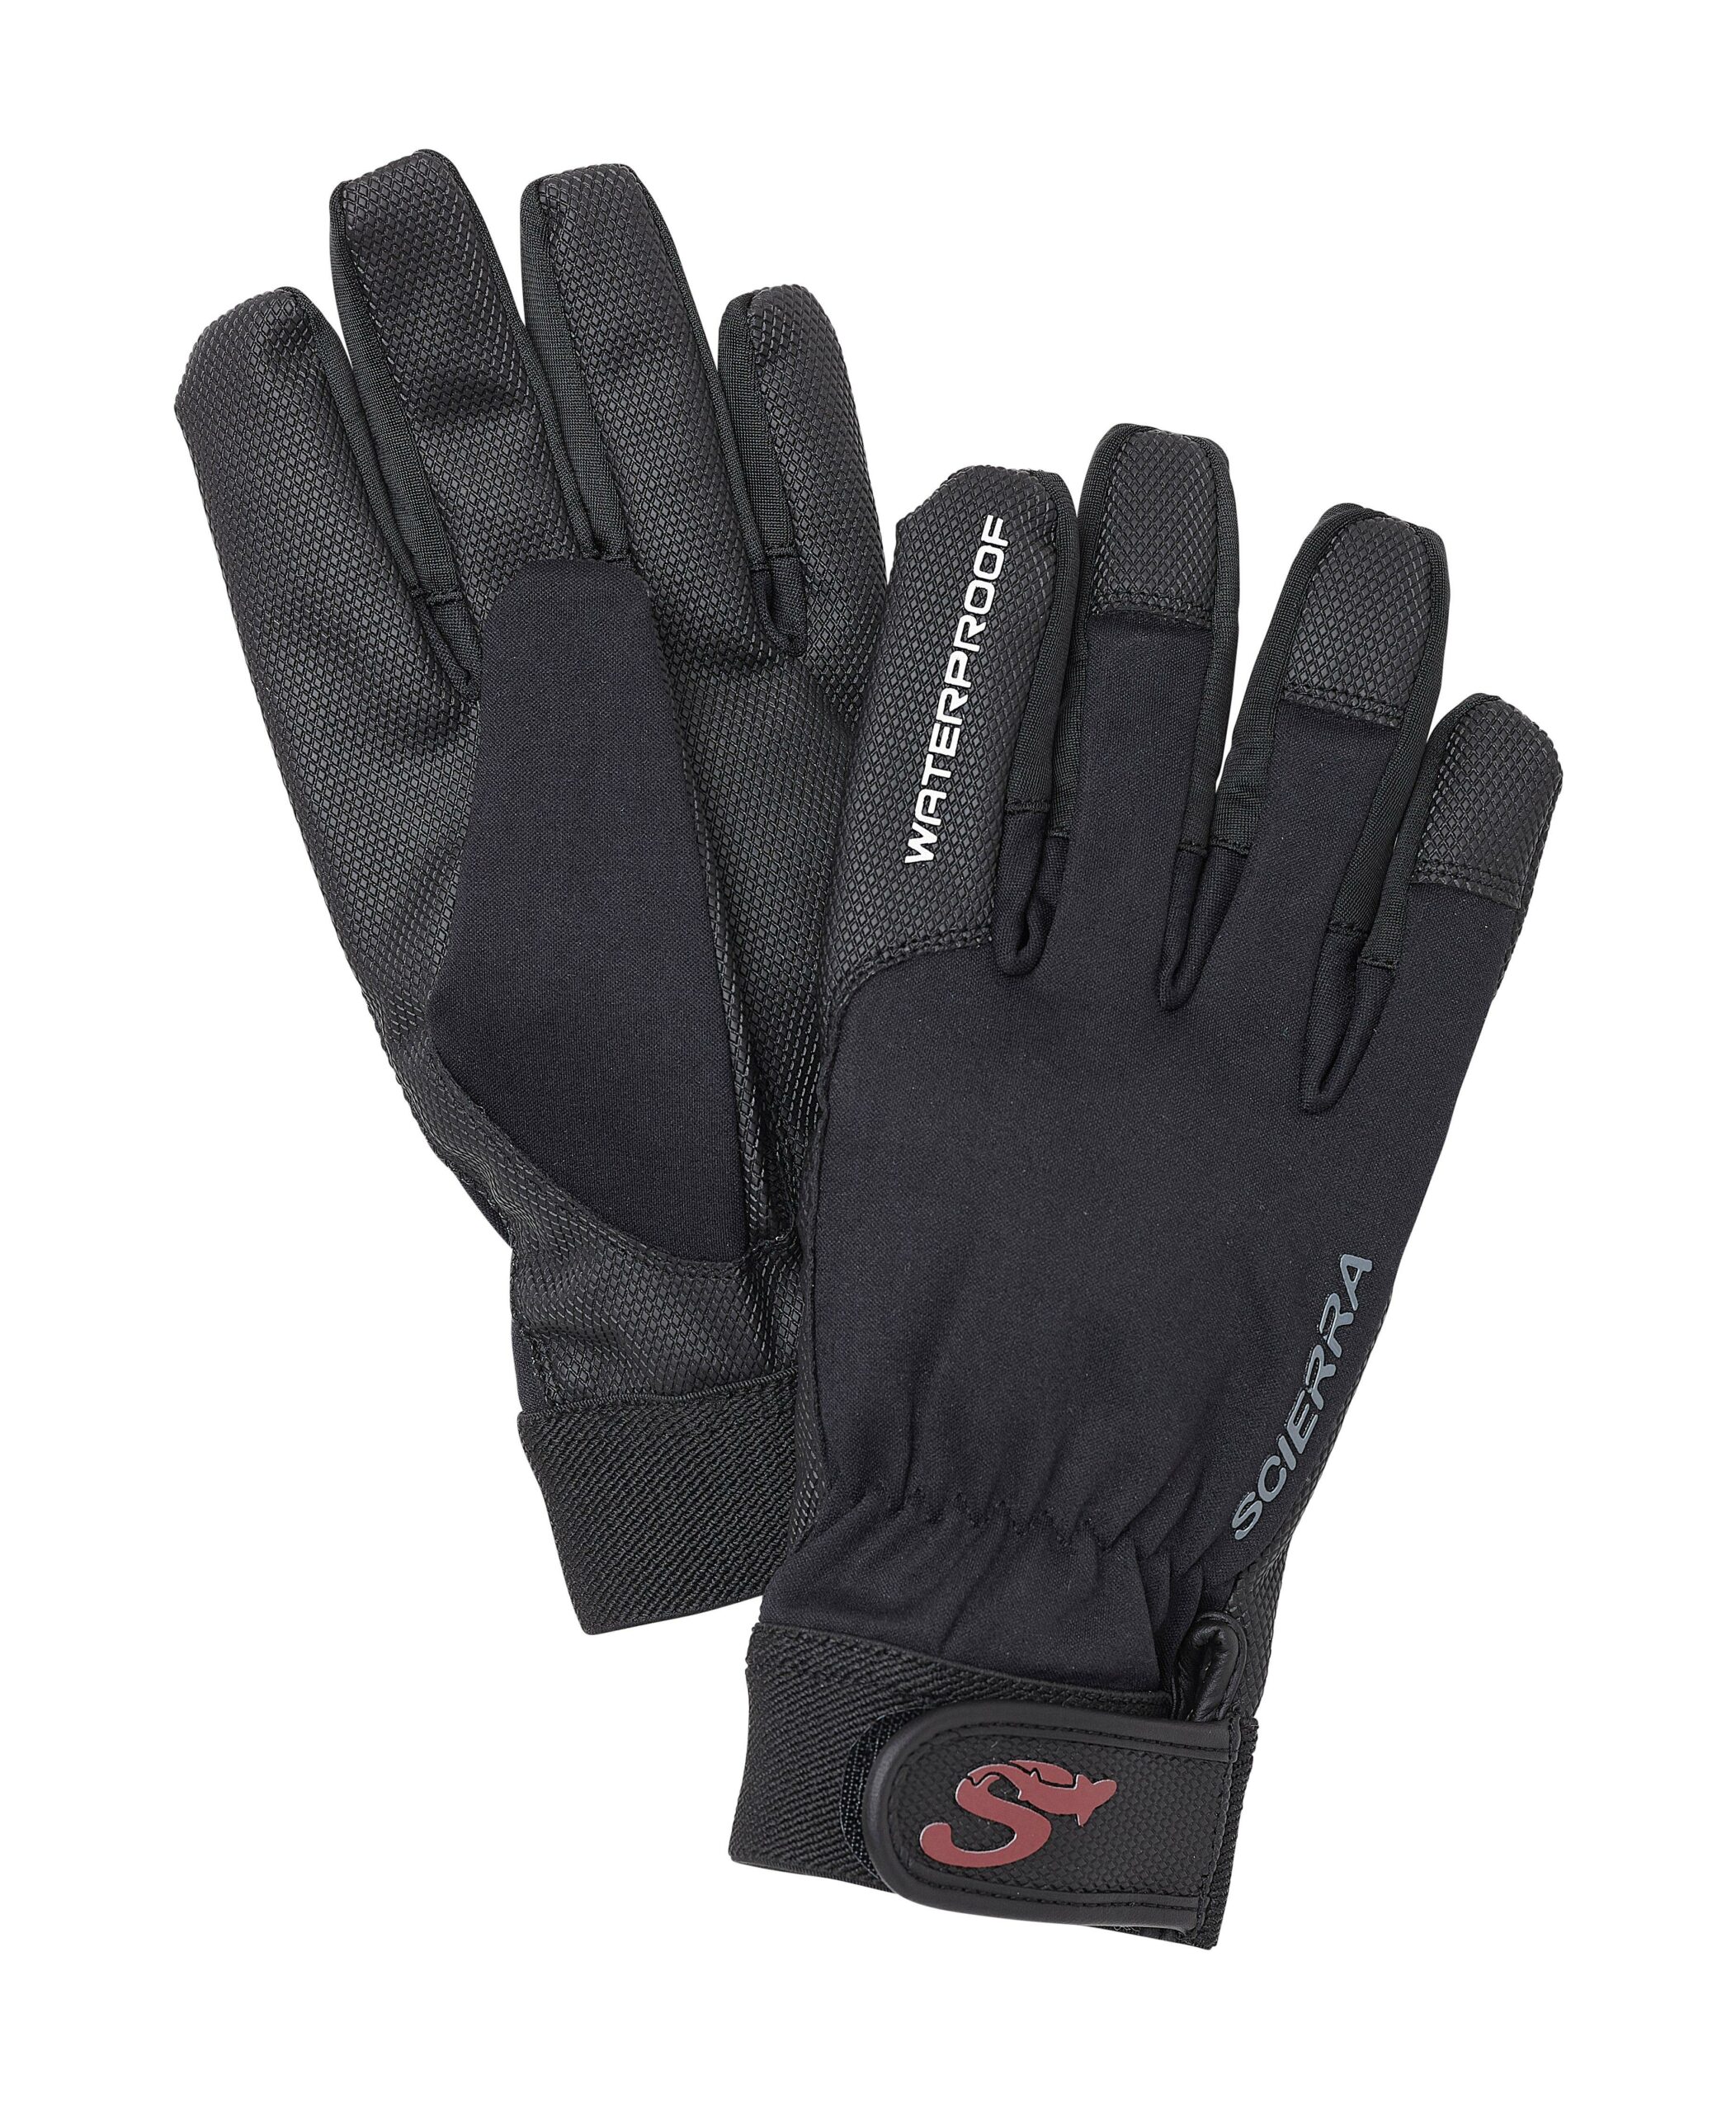 scierra waterproof Fishing Glove , XL